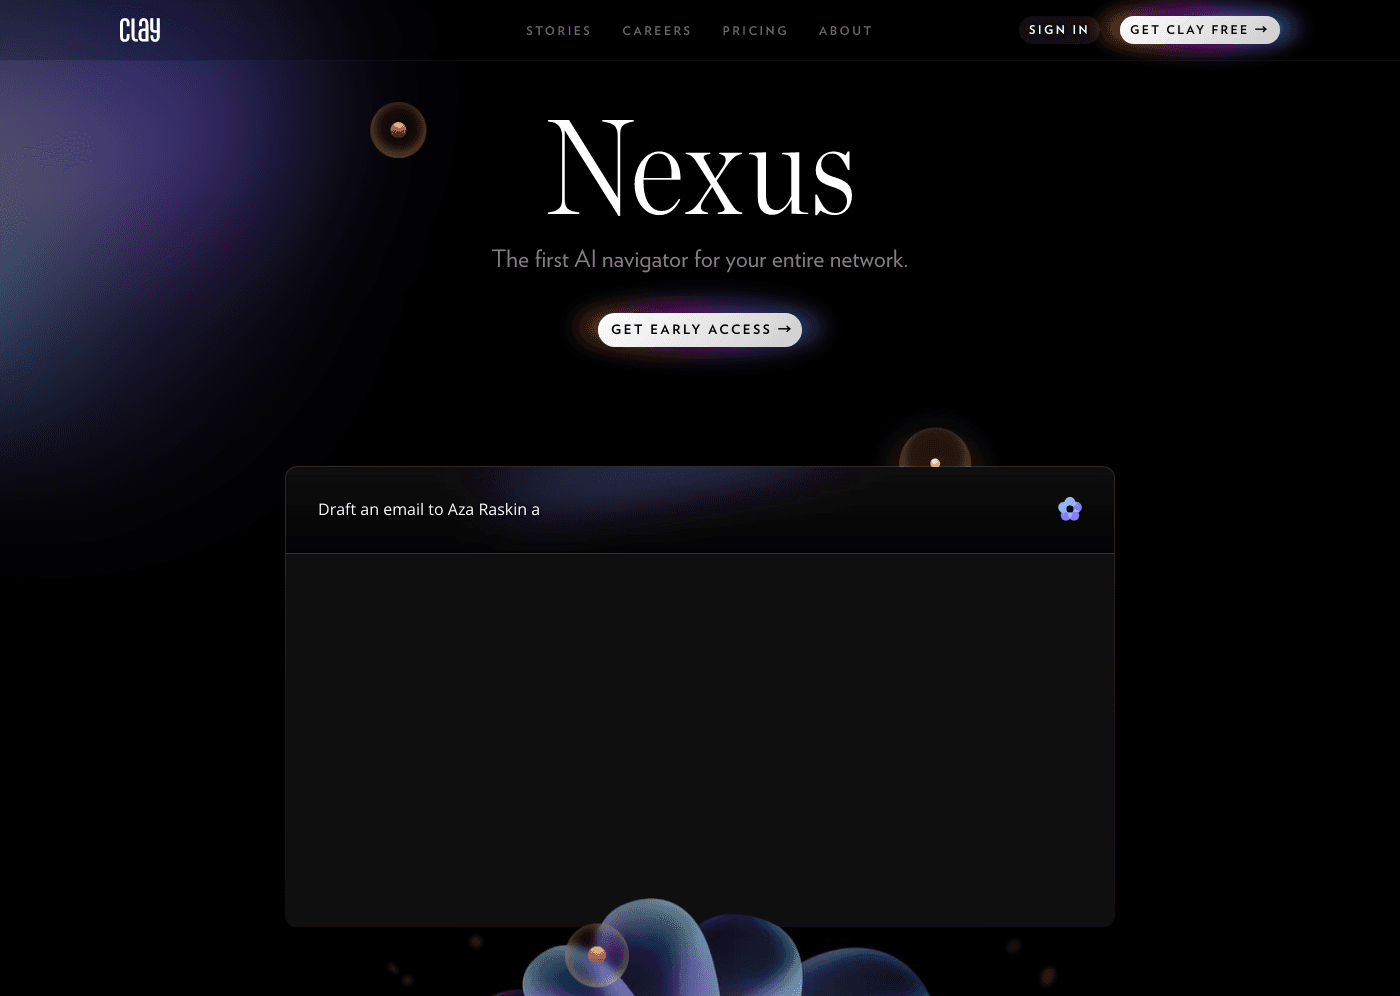 Clay Nexus website